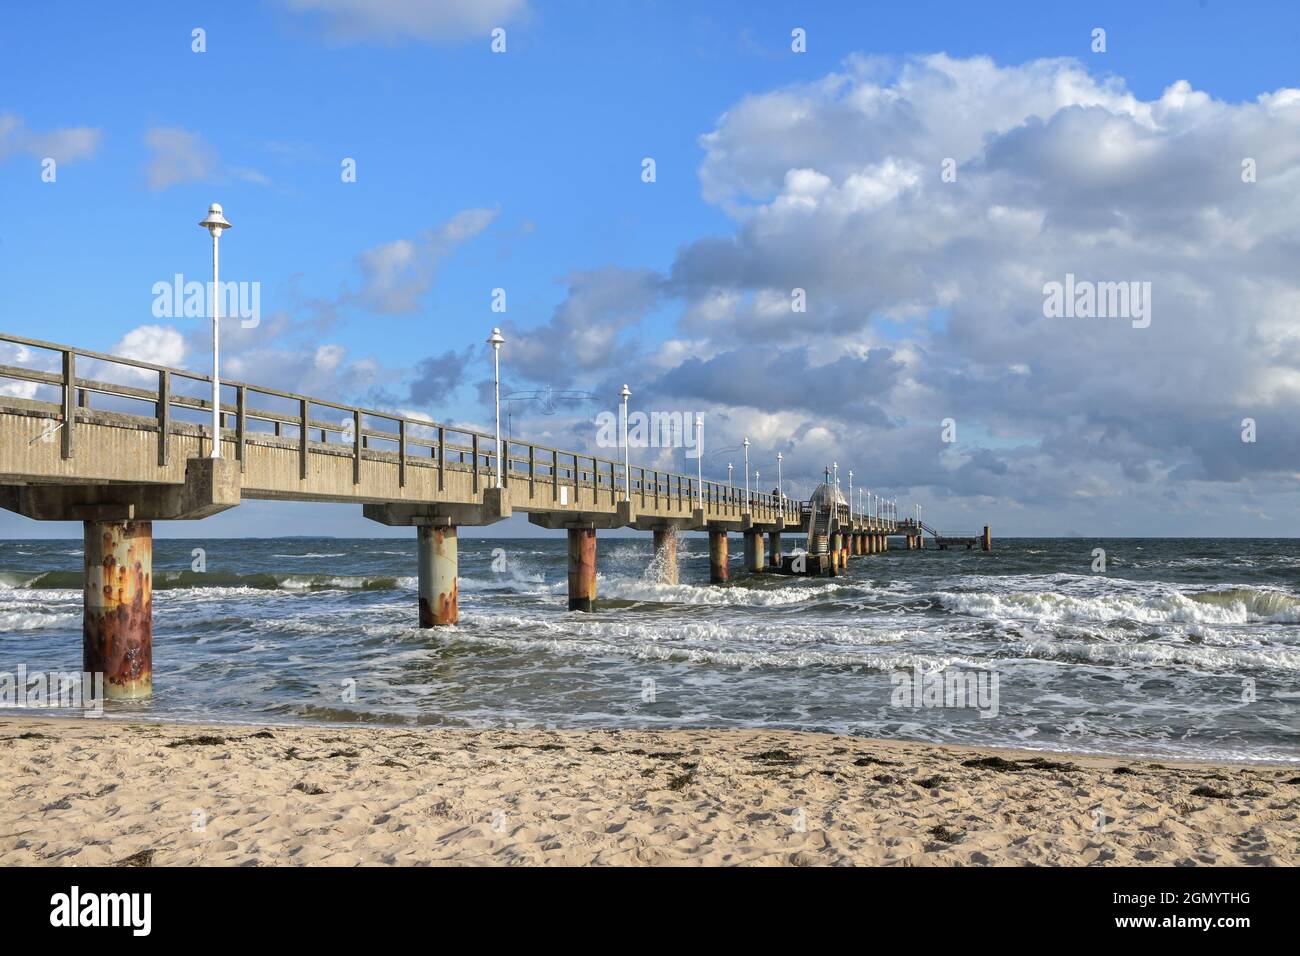 Seabridge alla spiaggia nella località turistica zinnowitz al Mar baltico, tempo ventoso con onde sull'acqua e cielo blu con nuvole, spazio copia, Foto Stock